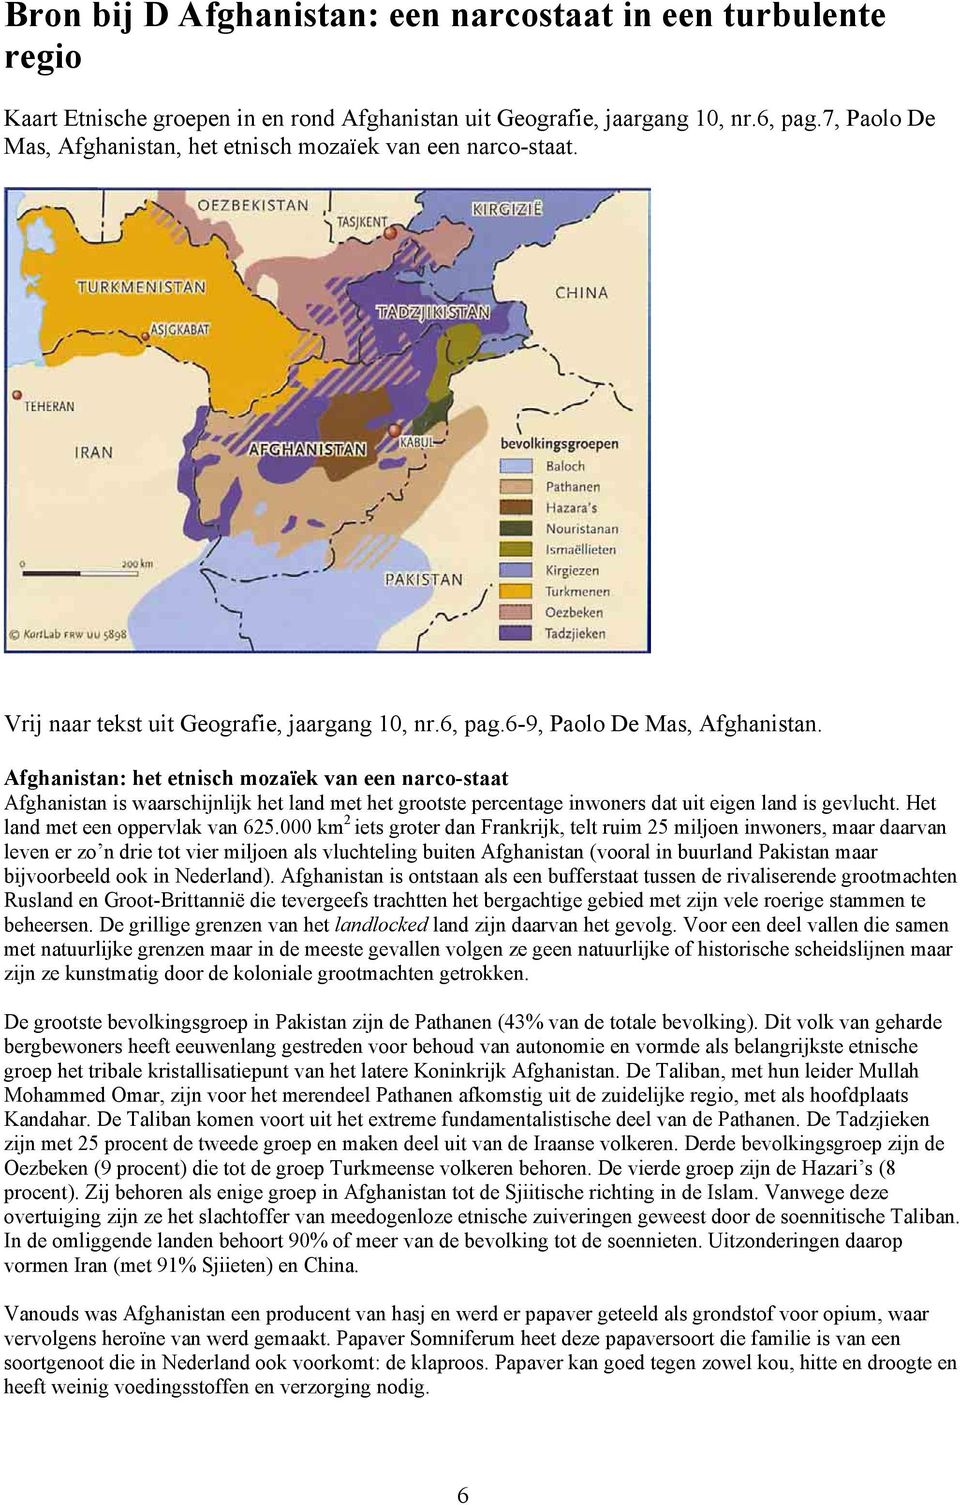 Afghanistan: het etnisch mozaïek van een narco-staat Afghanistan is waarschijnlijk het land met het grootste percentage inwoners dat uit eigen land is gevlucht. Het land met een oppervlak van 625.